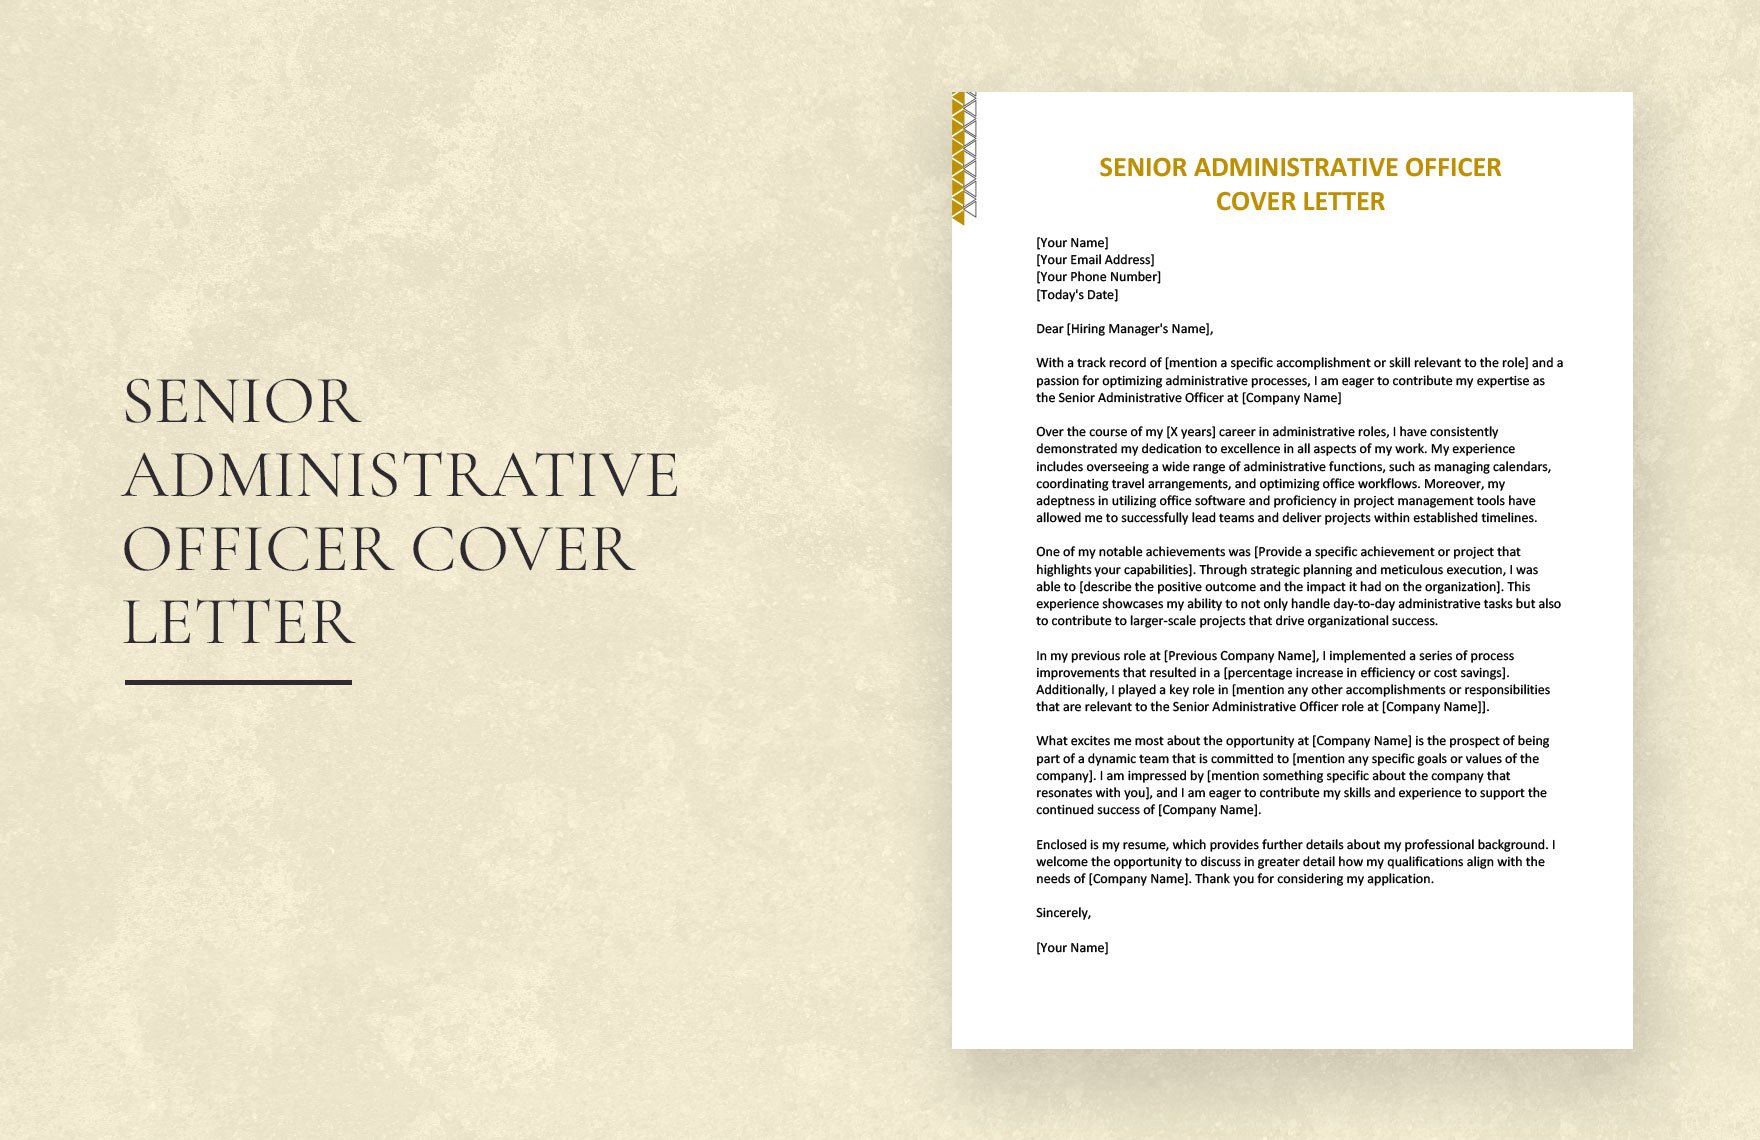 Senior Administrative Officer Cover Letter